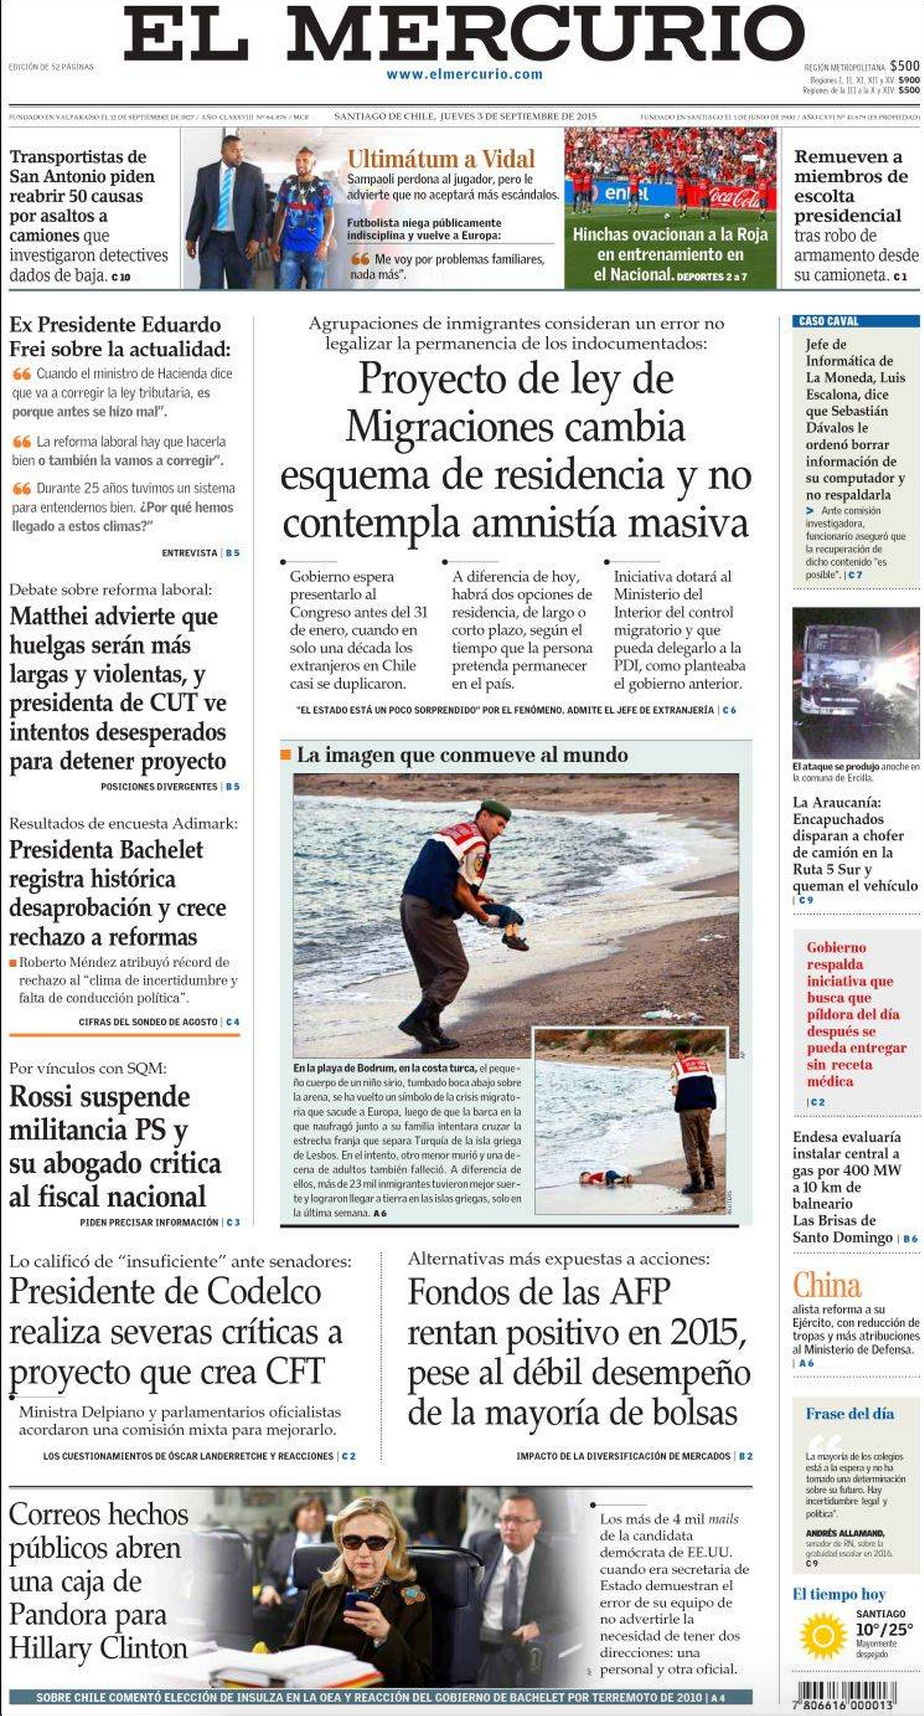 Drowned Migrant Boy El Mercurio Front Page